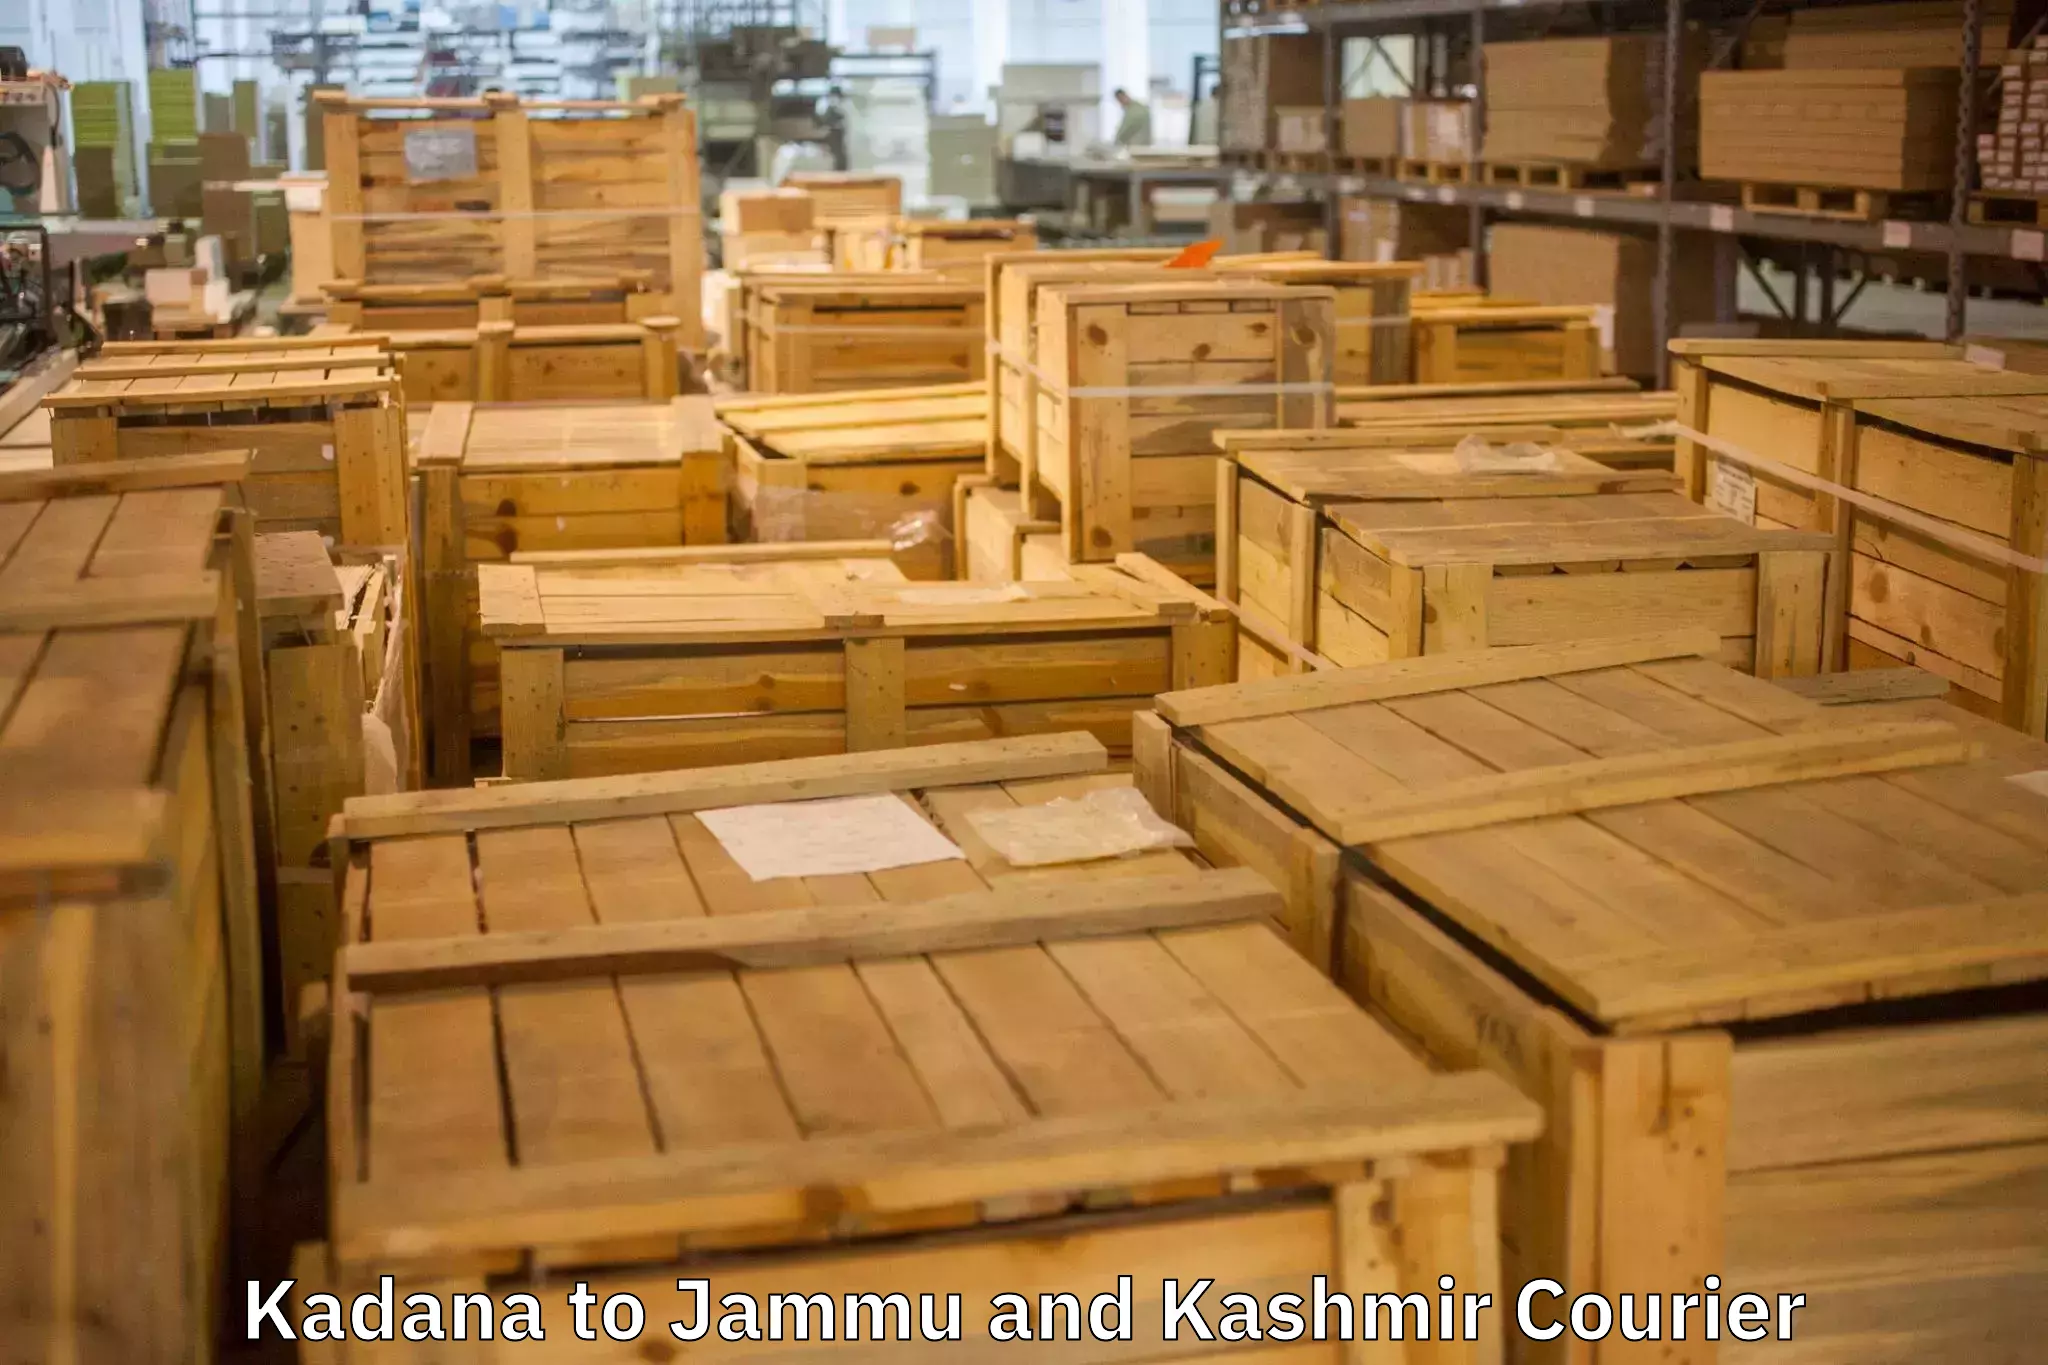 Furniture moving service Kadana to Jammu